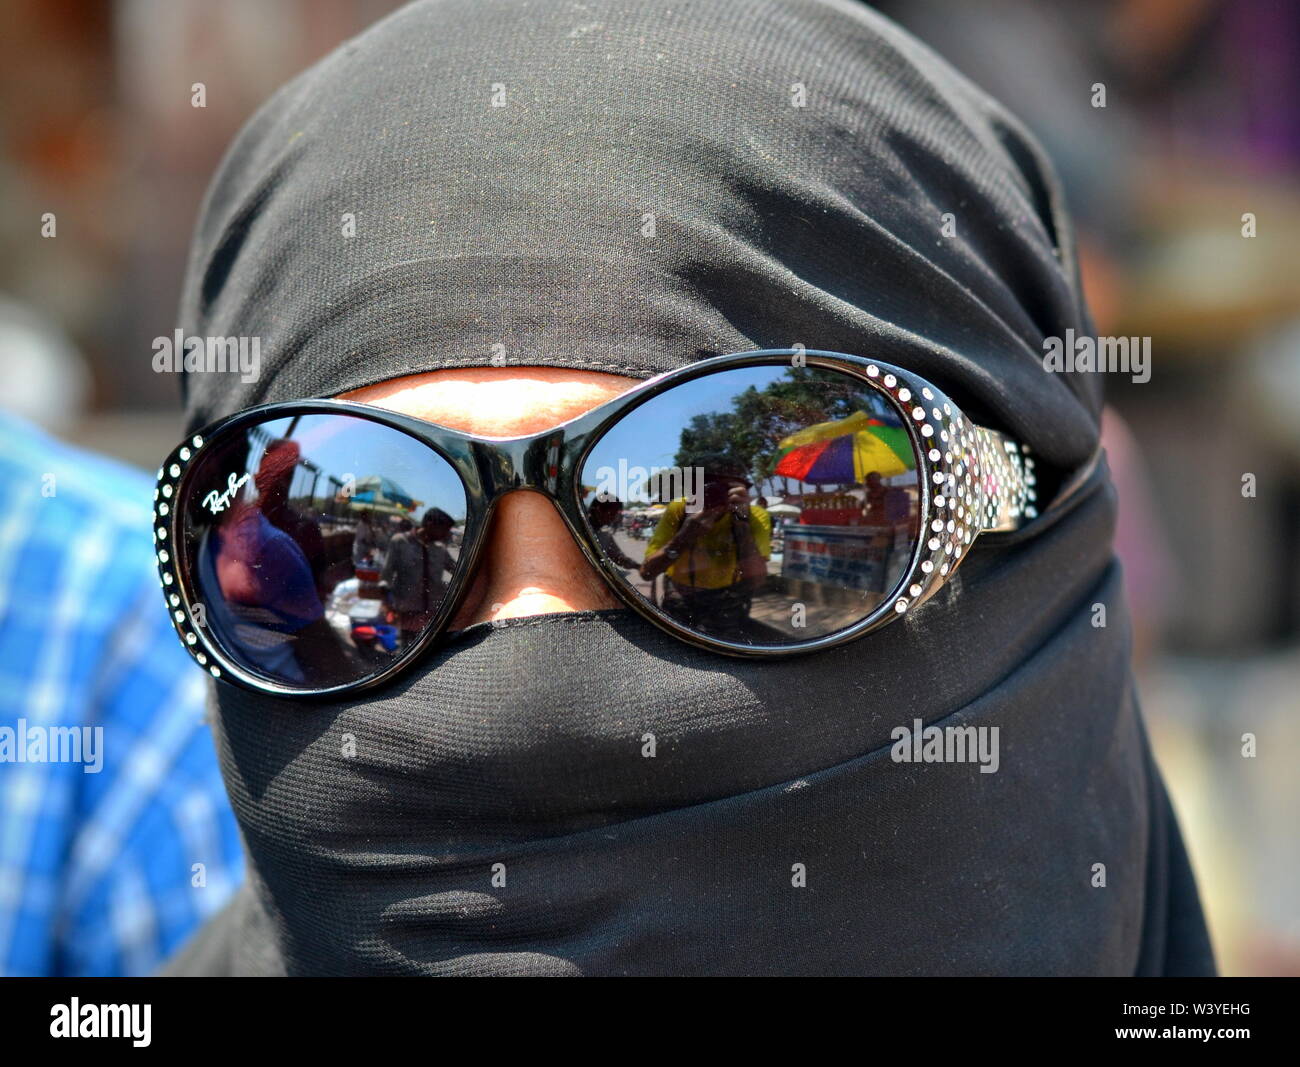 Completamente coperta Muslima indiano indossa un niqab nero e nasconde i suoi occhi dietro gli occhiali da sole con mirroring. Foto Stock